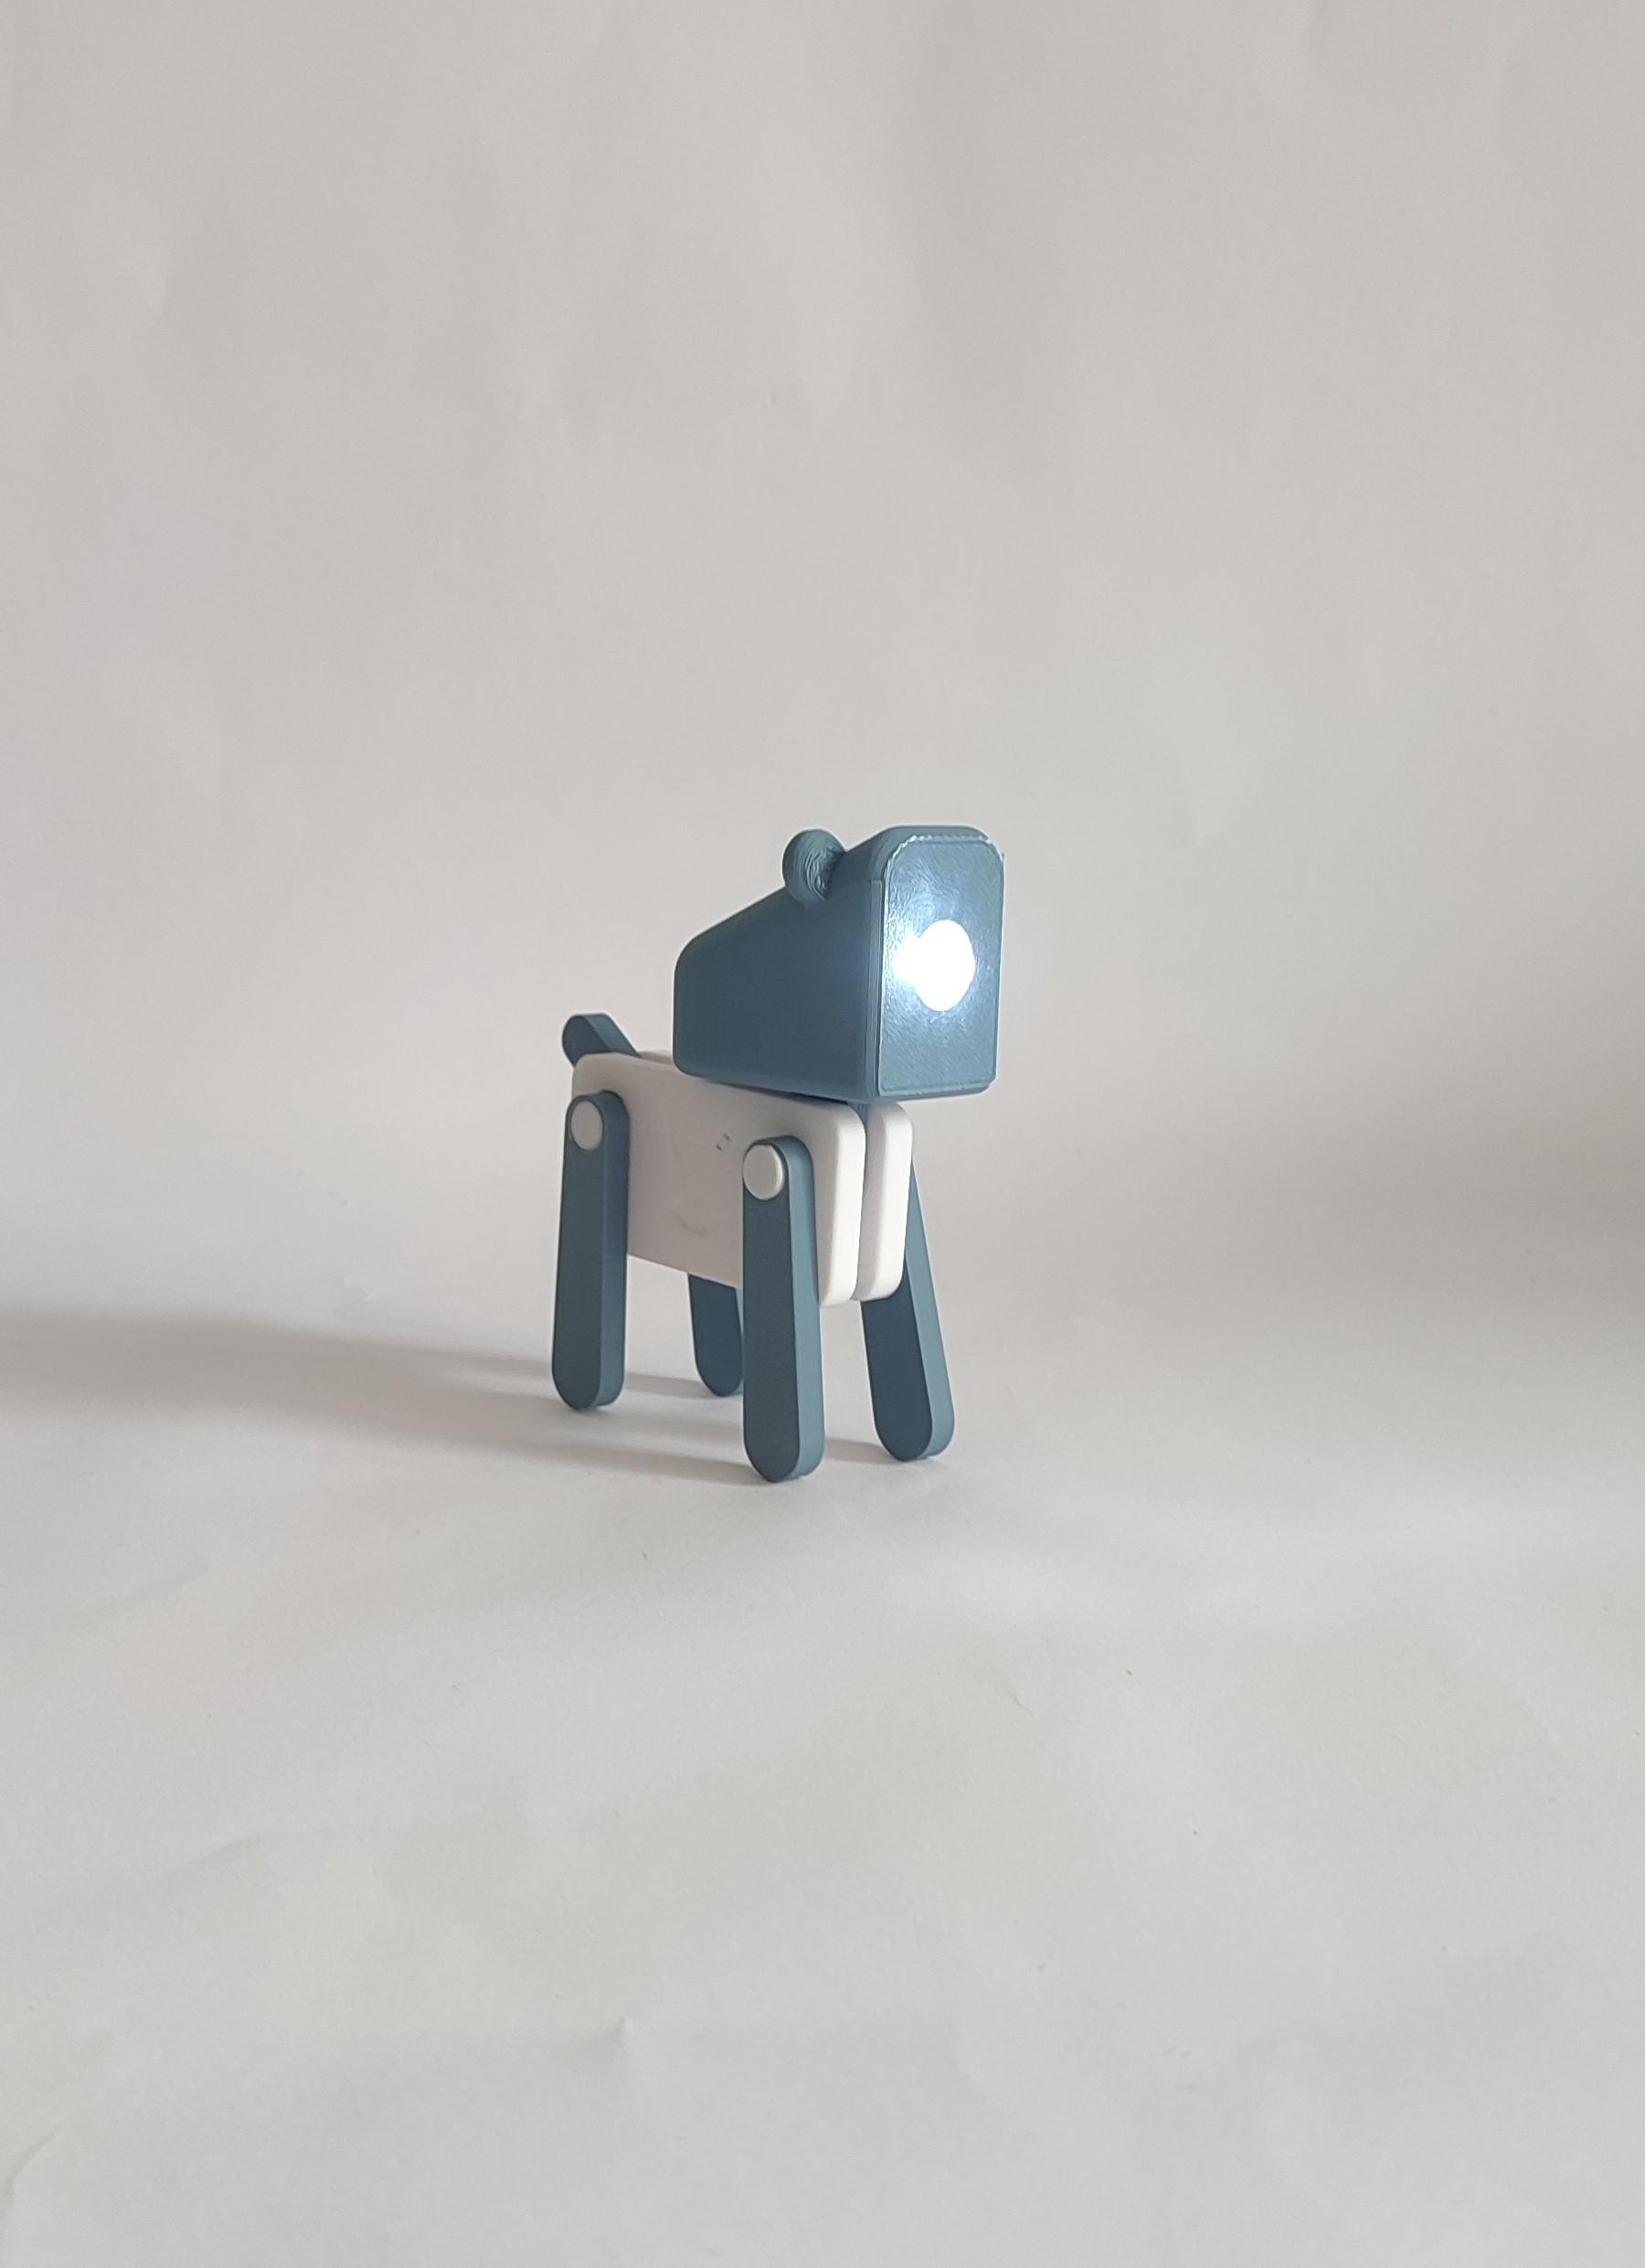 Dog Mini Lamp  3d model